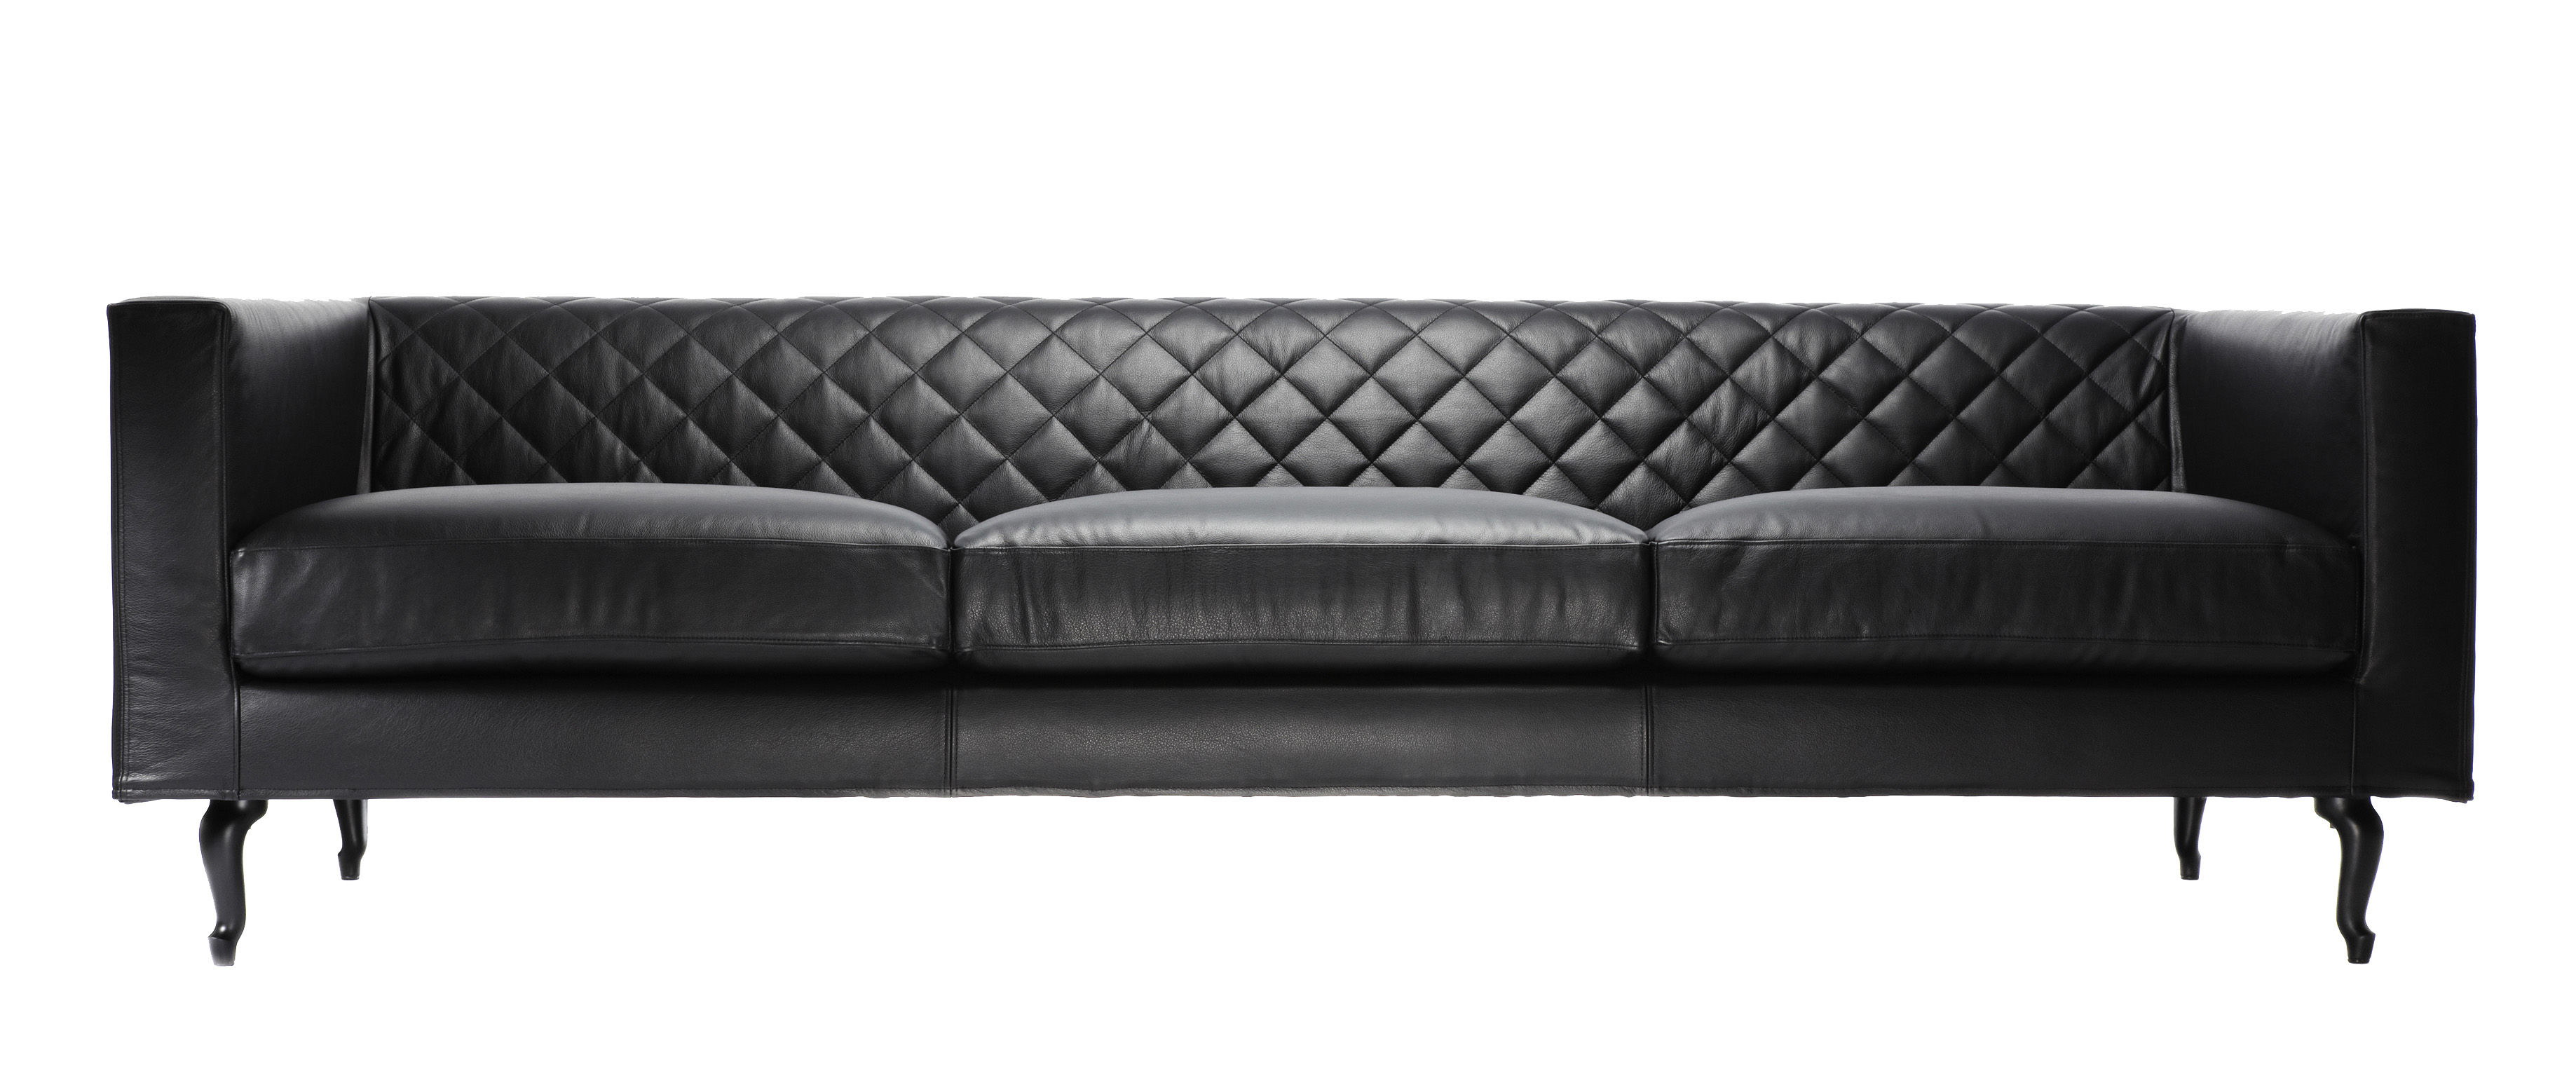 moooi boutique leather sofa